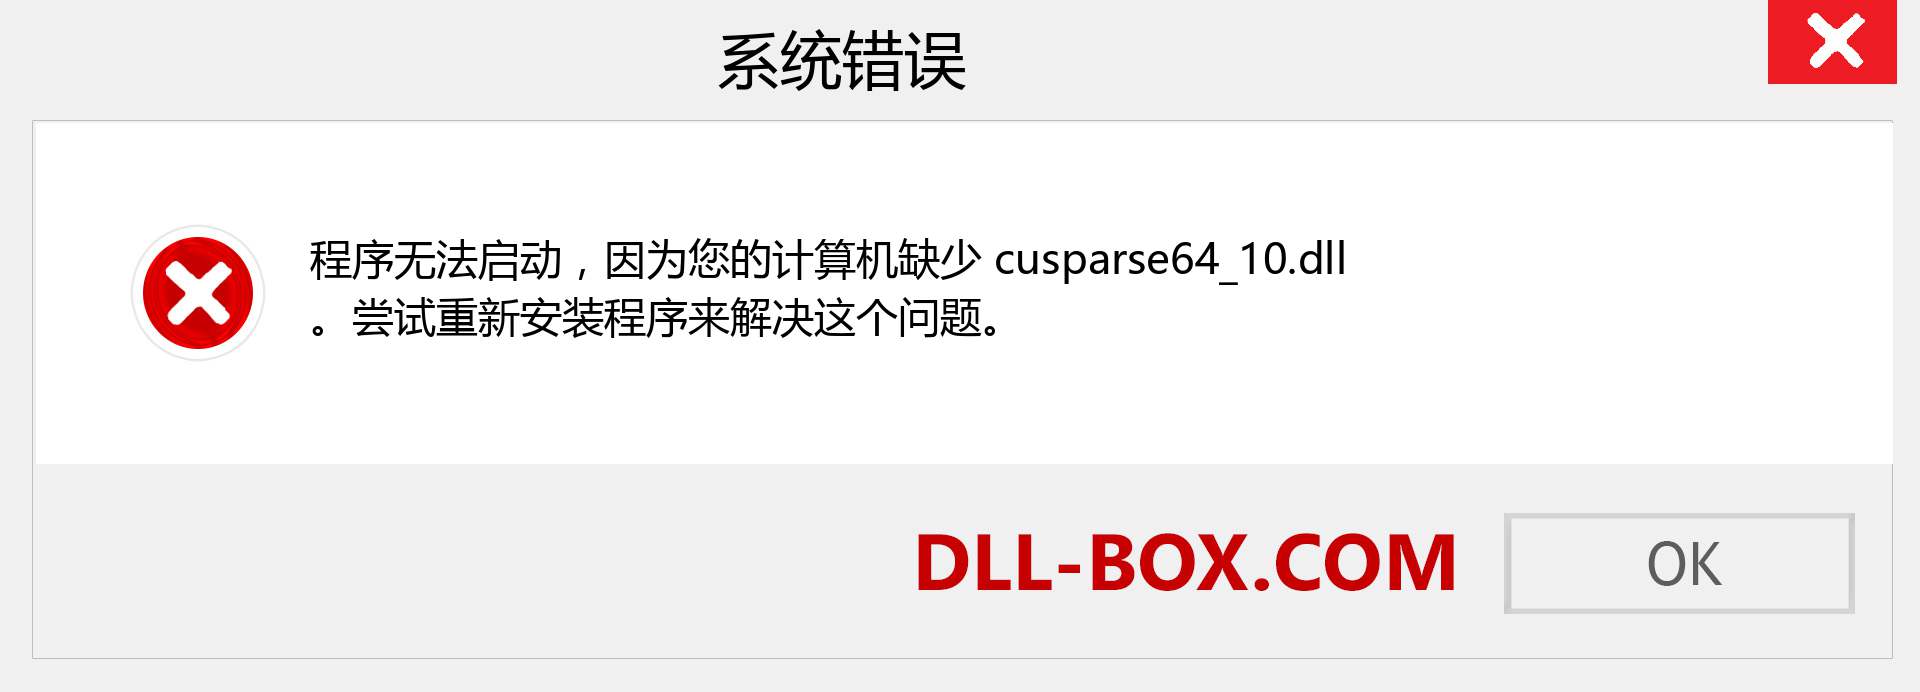 cusparse64_10.dll 文件丢失？。 适用于 Windows 7、8、10 的下载 - 修复 Windows、照片、图像上的 cusparse64_10 dll 丢失错误